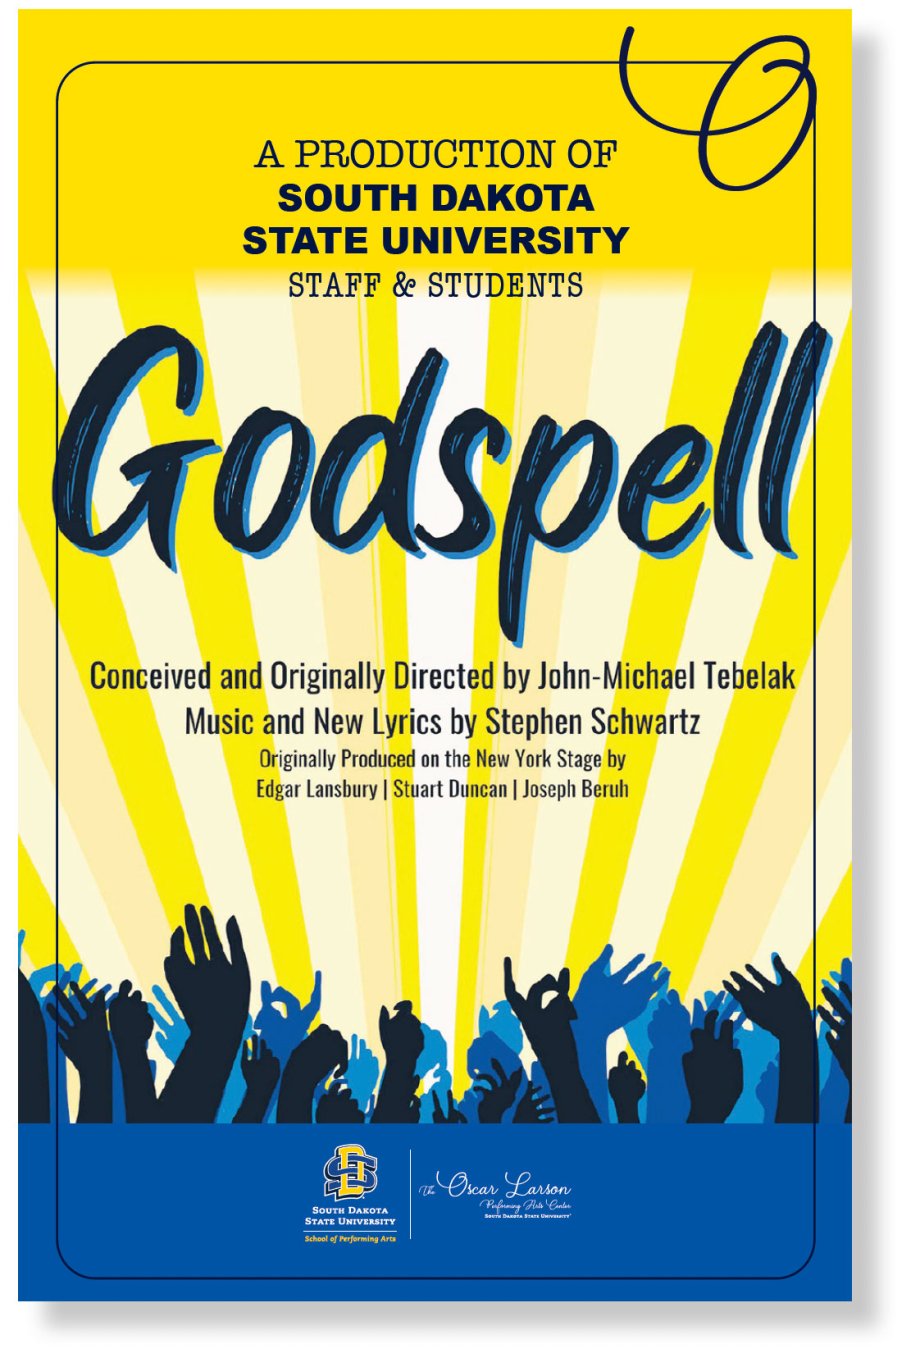 Godspell program example of co-branding